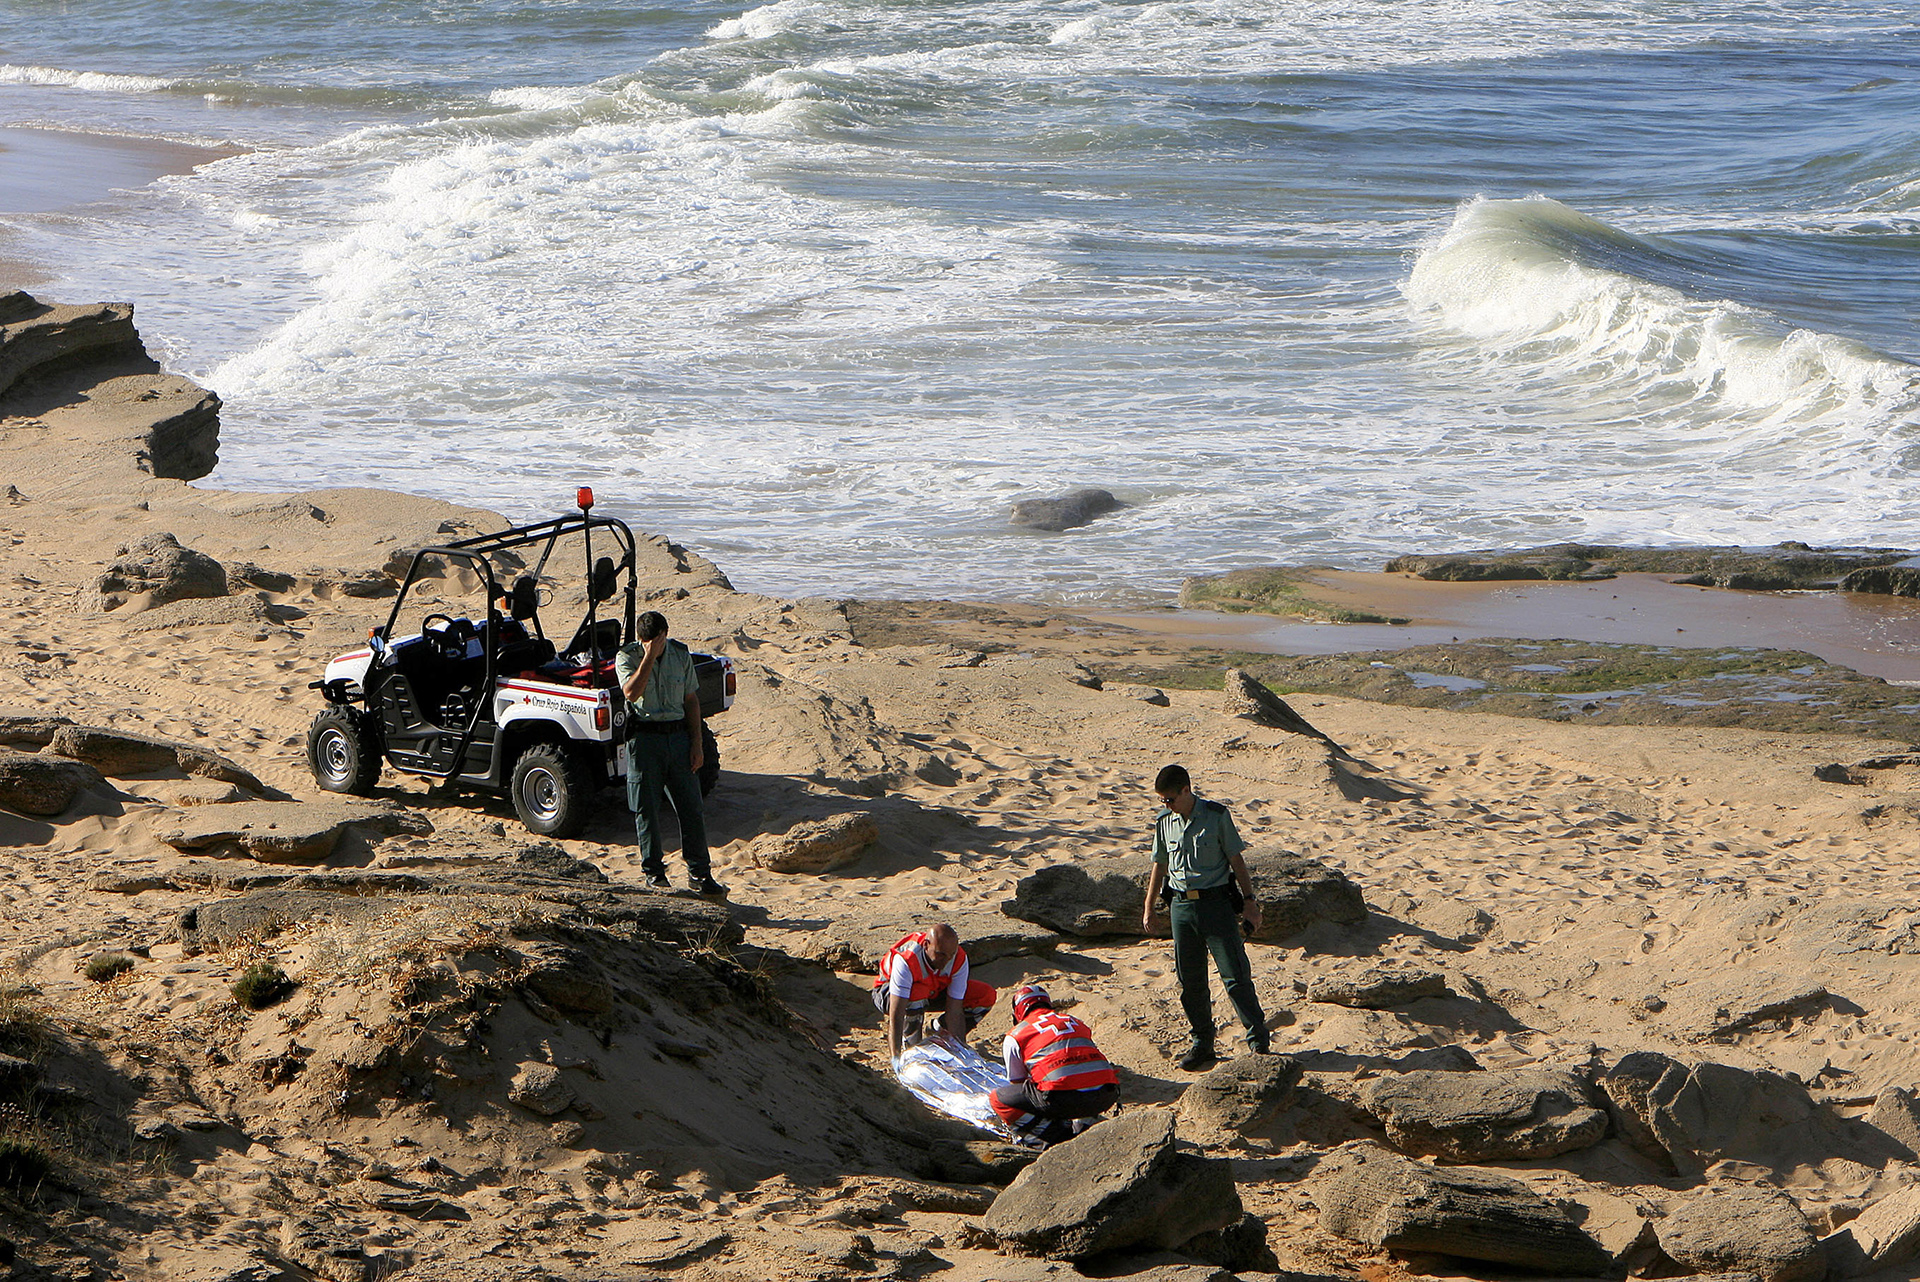 Las playas de Barbate viven en primera línea el drama de la inmigración. (Foto: Anton Meres/Reuters)